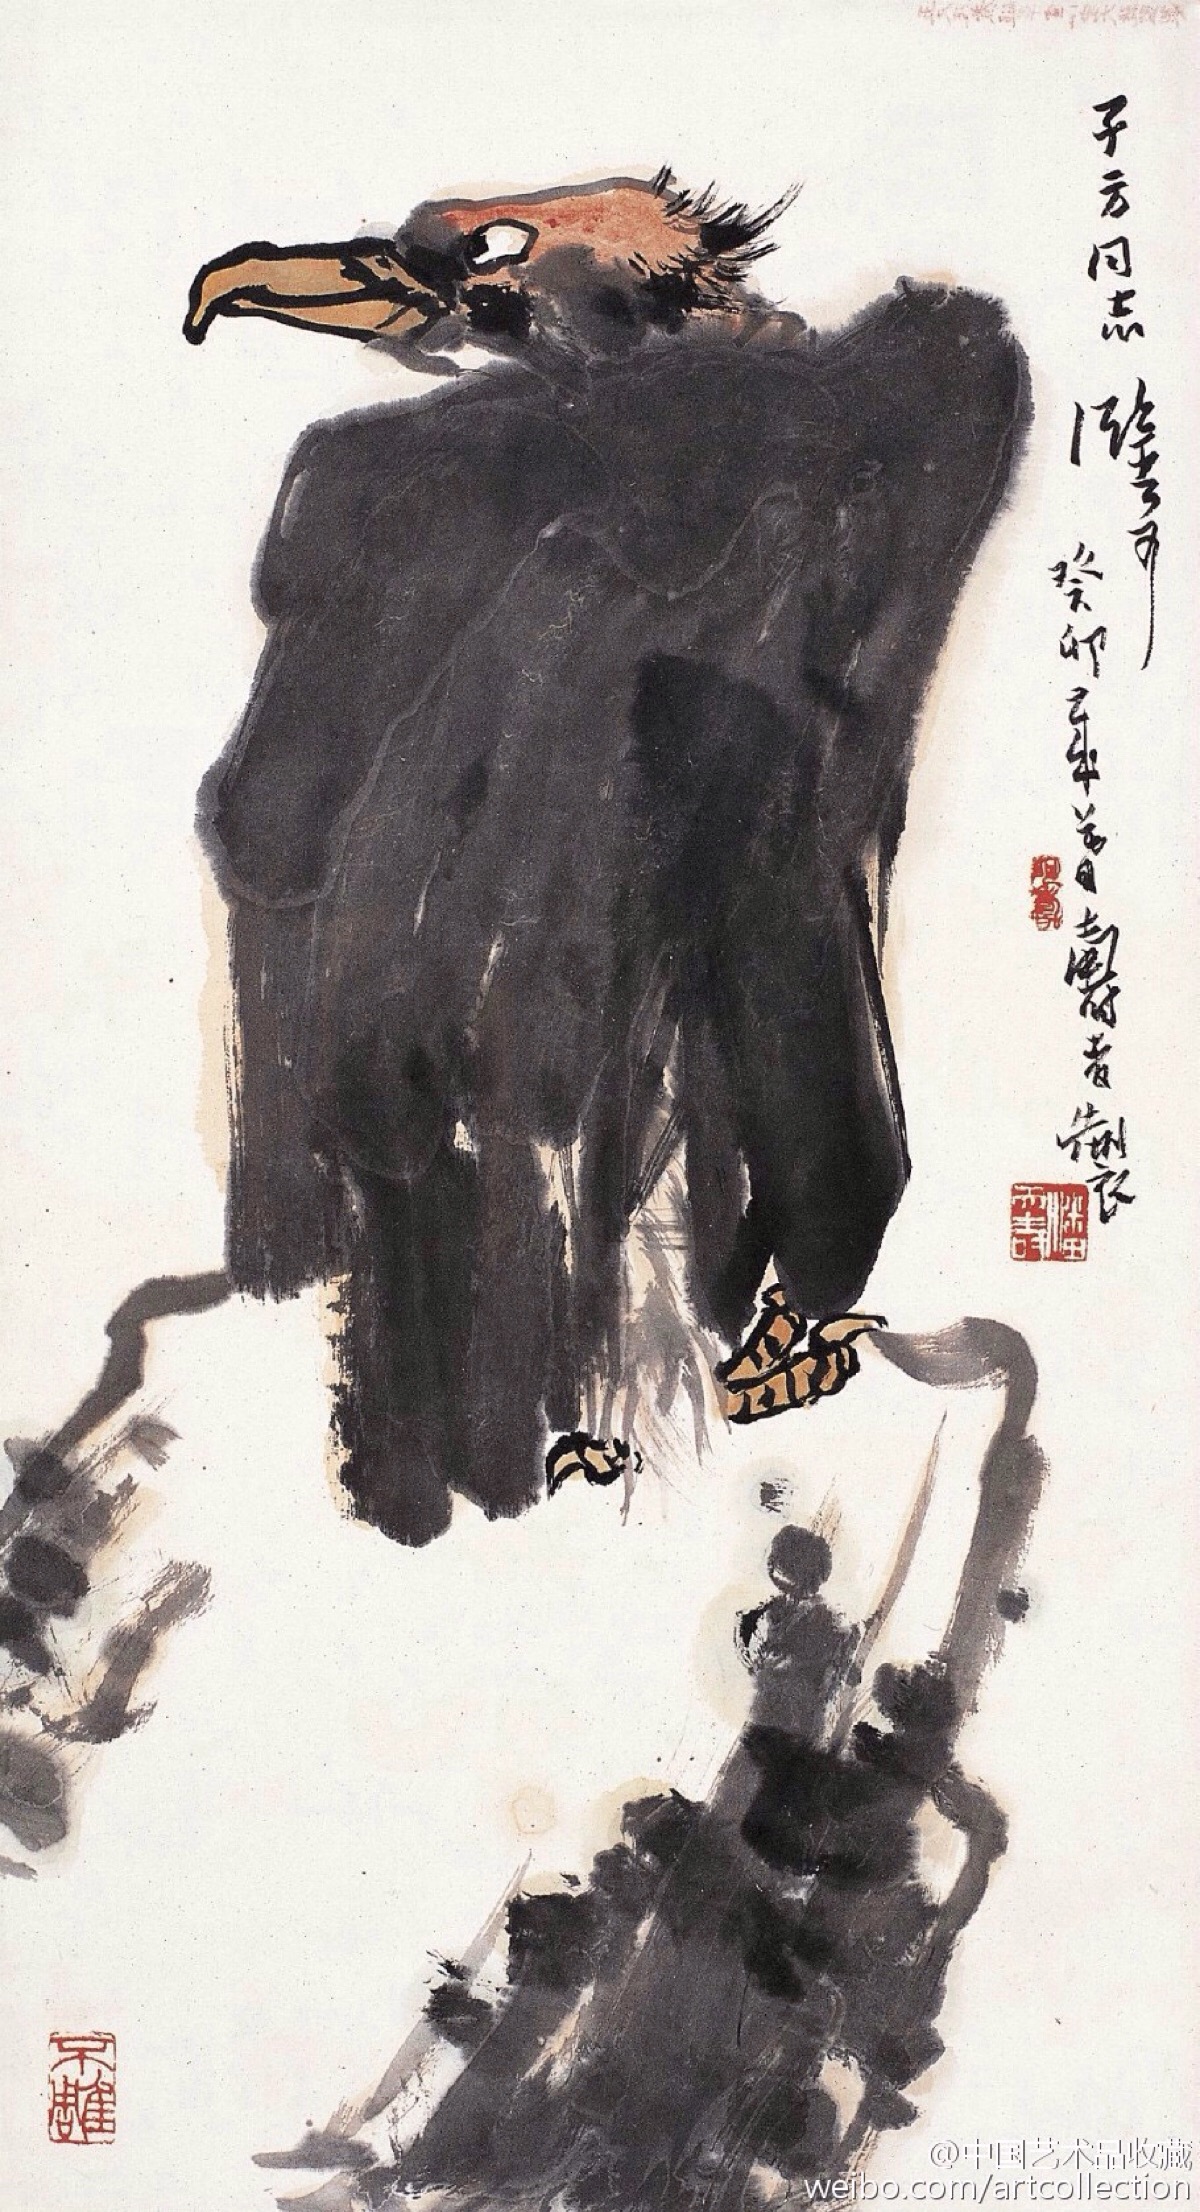 【 潘天寿 《灵鹫盘石图》 】立轴,纸本设色,74×40.5cm,1963年作.